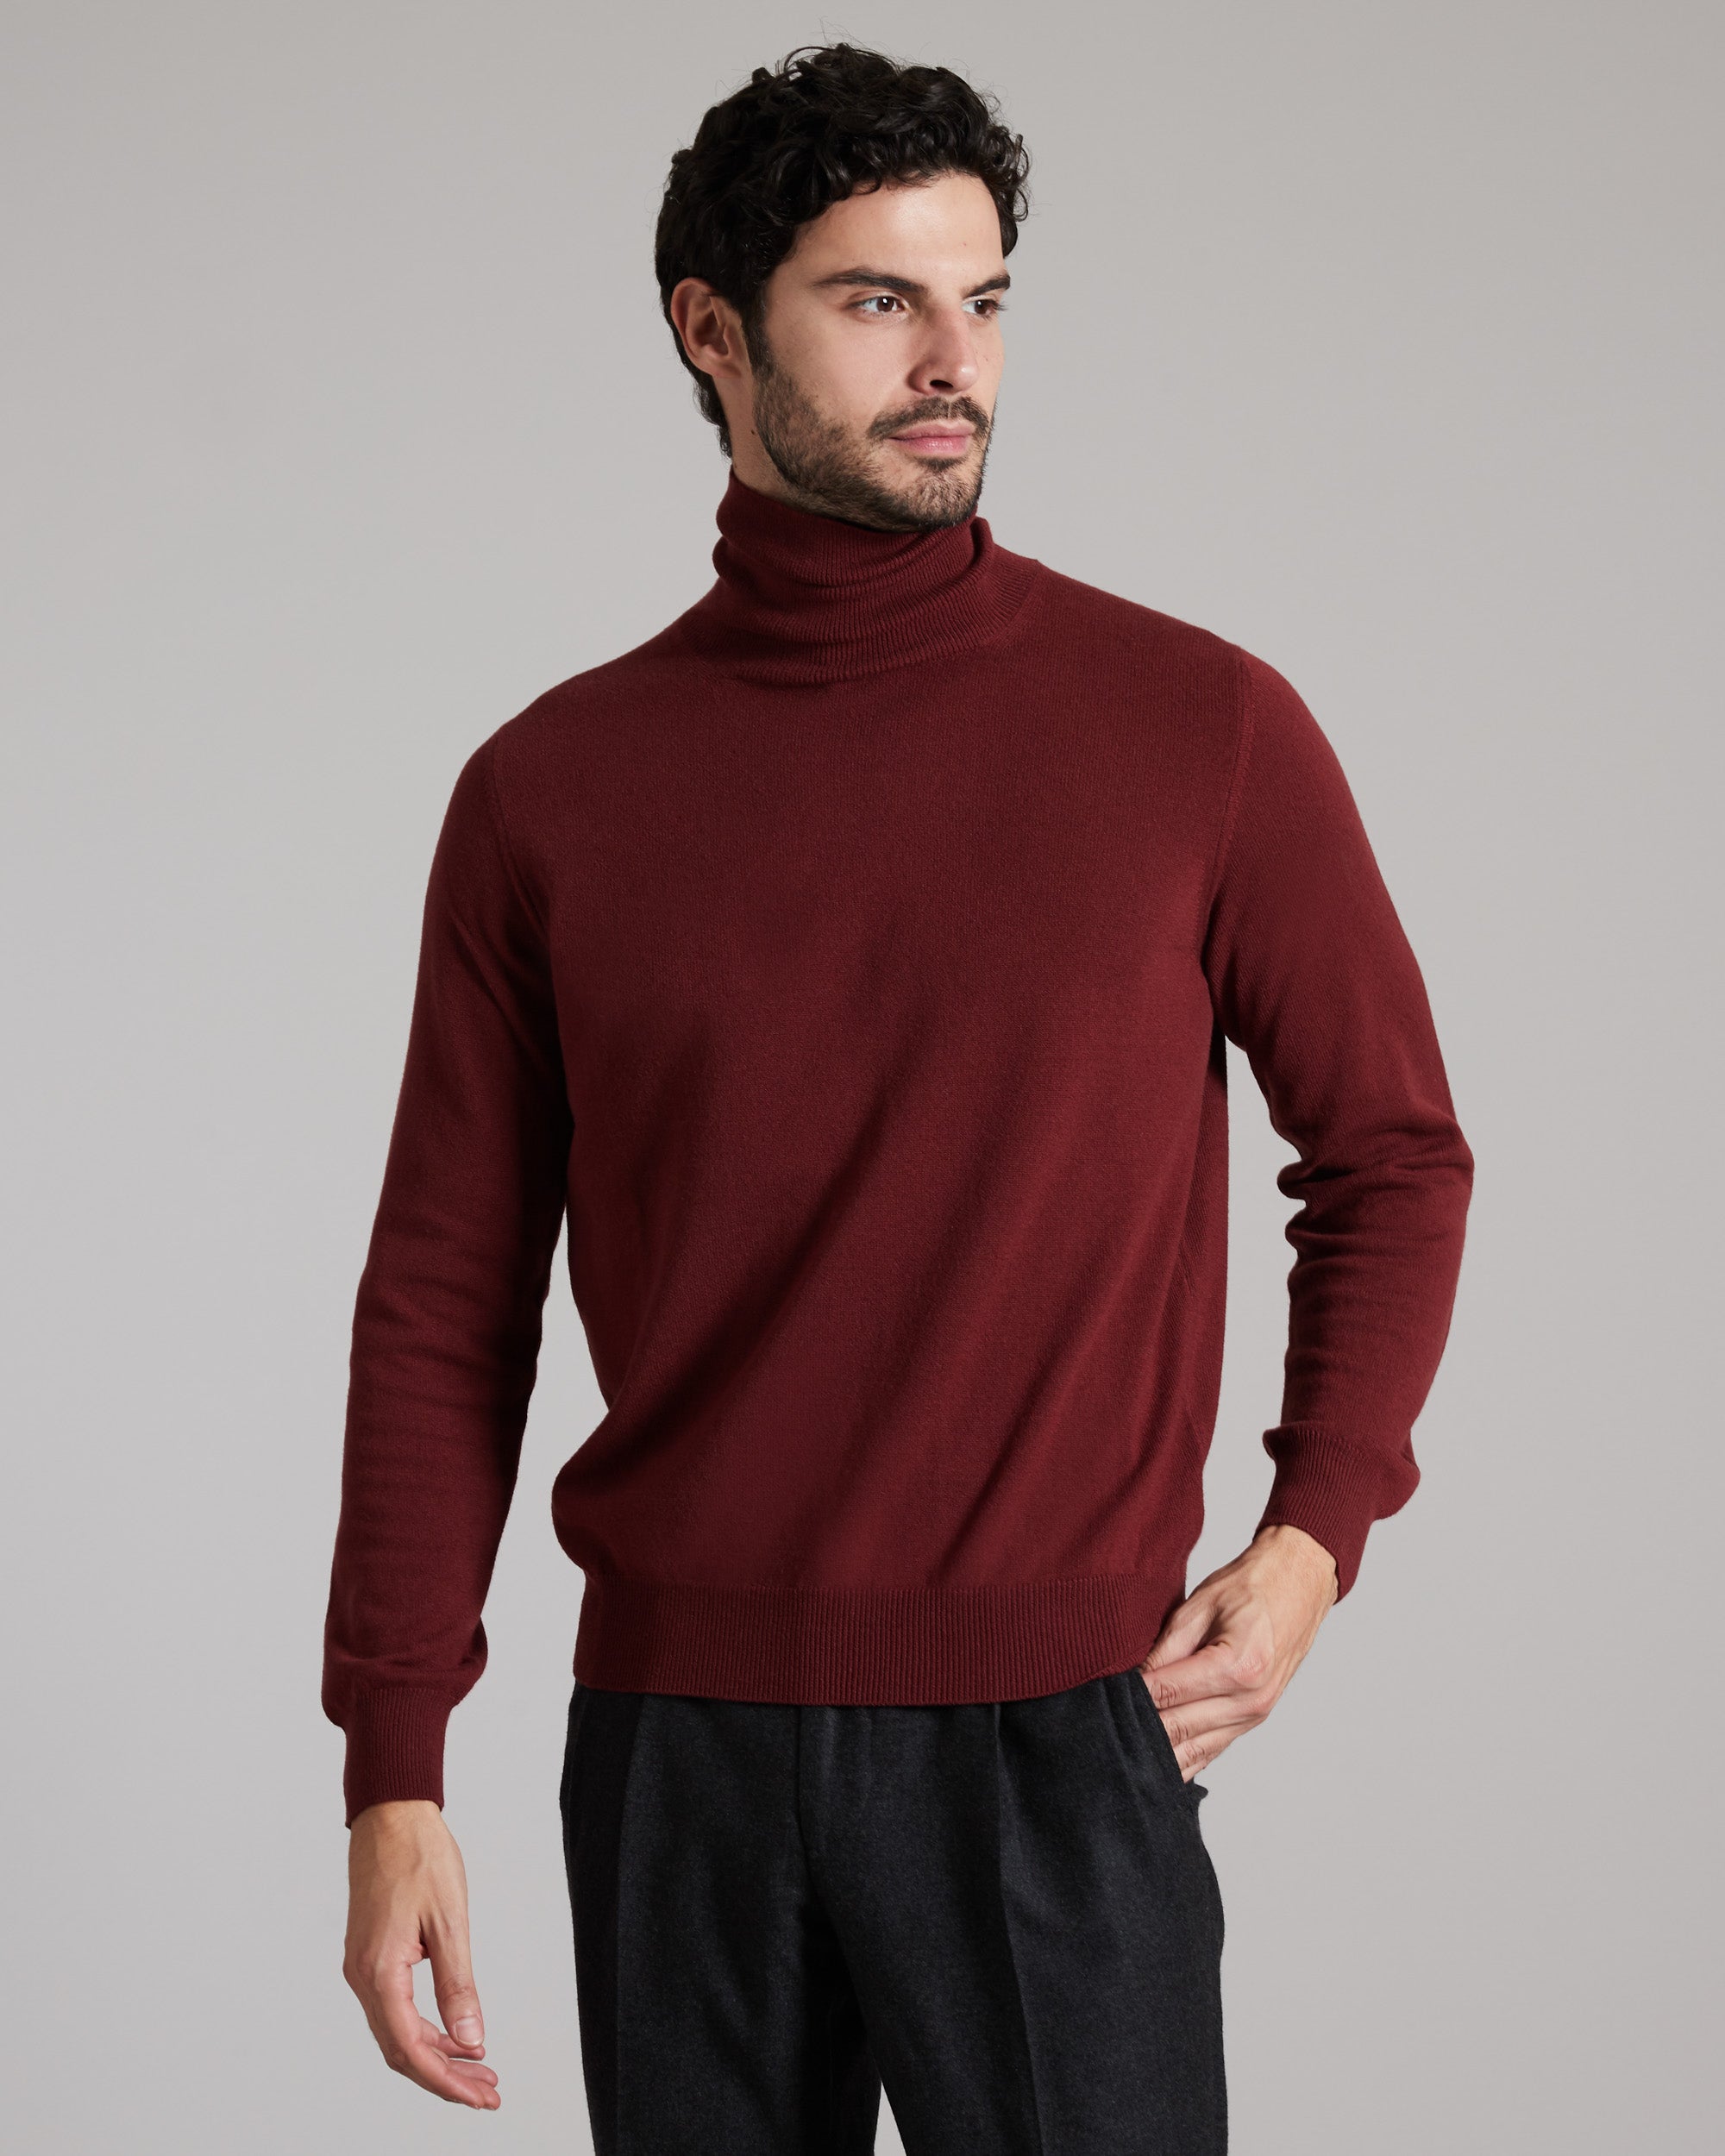 Bordeaux Kid Cashmere turtleneck sweater